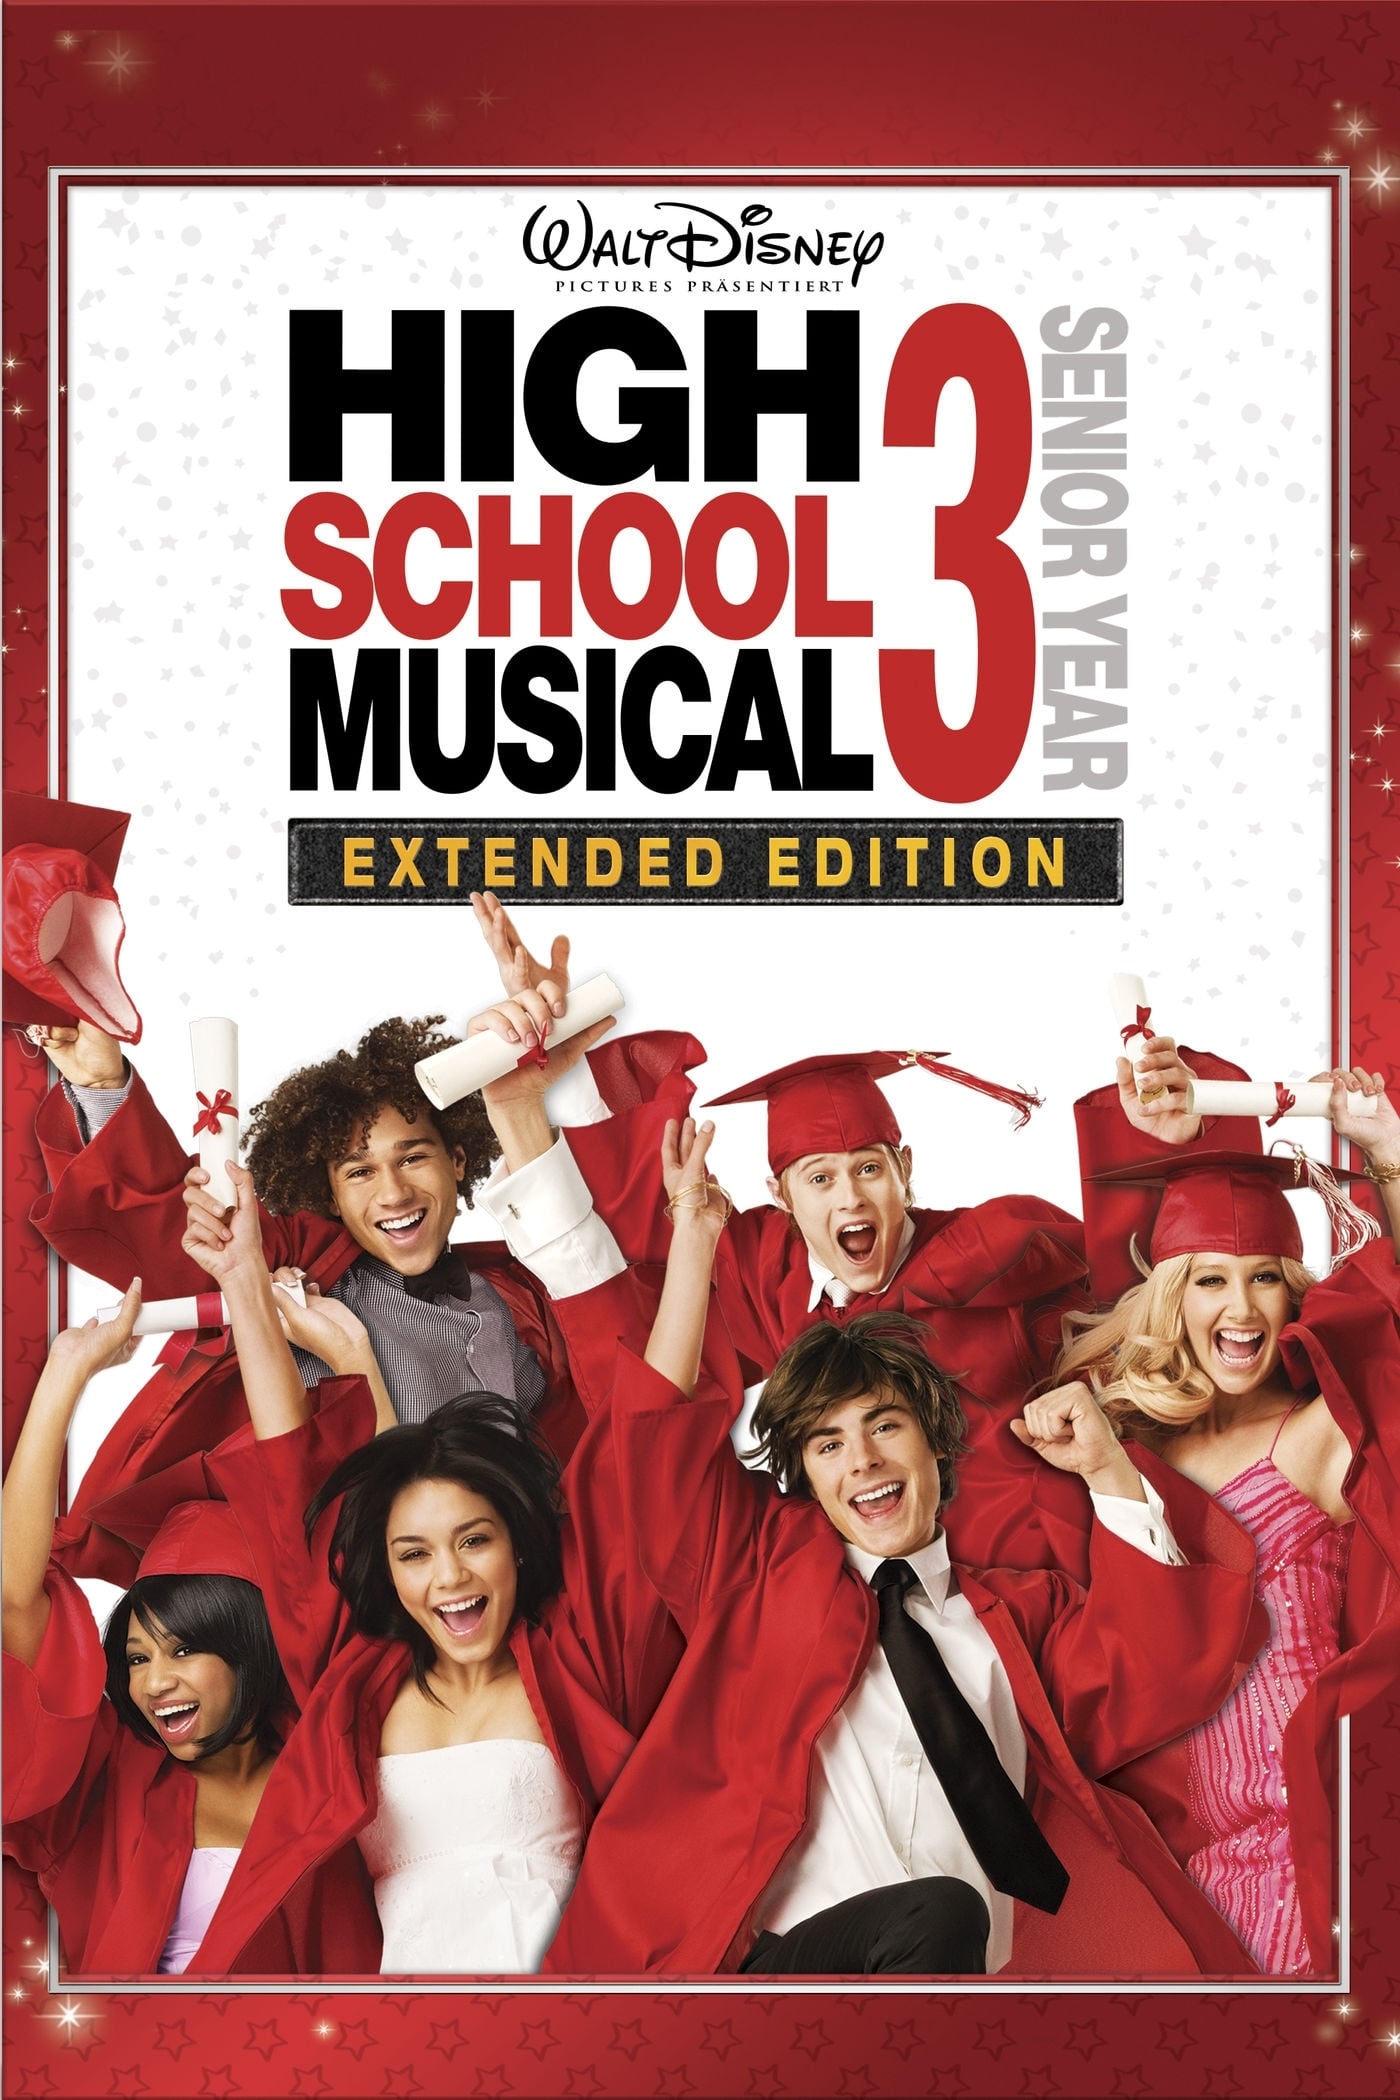 Plakat von "High School Musical 3: Senior Year"